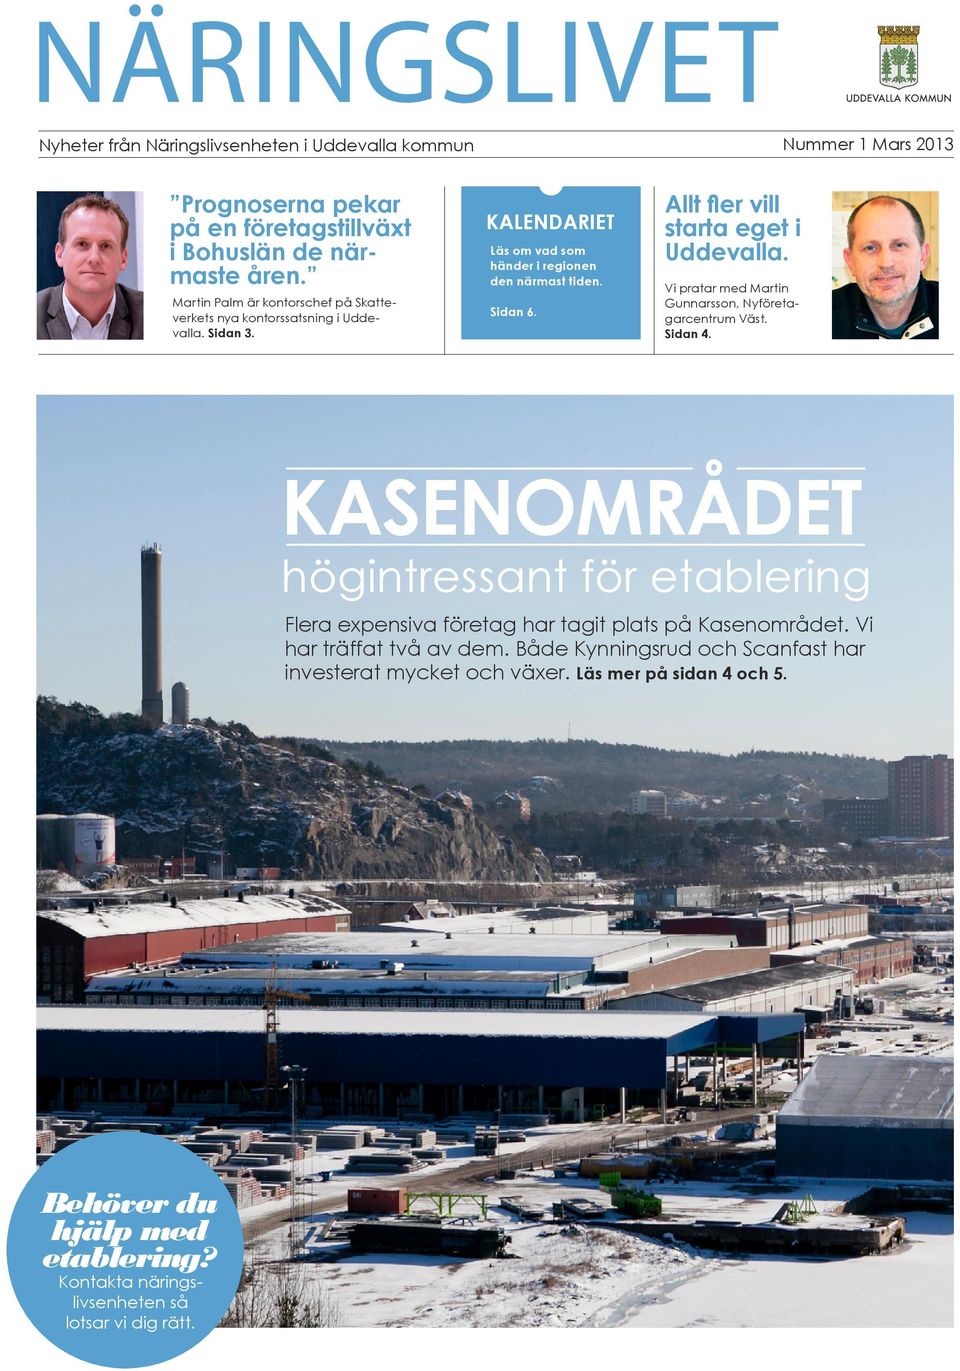 Allt fler vill starta eget i Uddevalla. Vi pratar med Martin Gunnarsson, Nyföretagarcentrum Väst. Sidan 4.